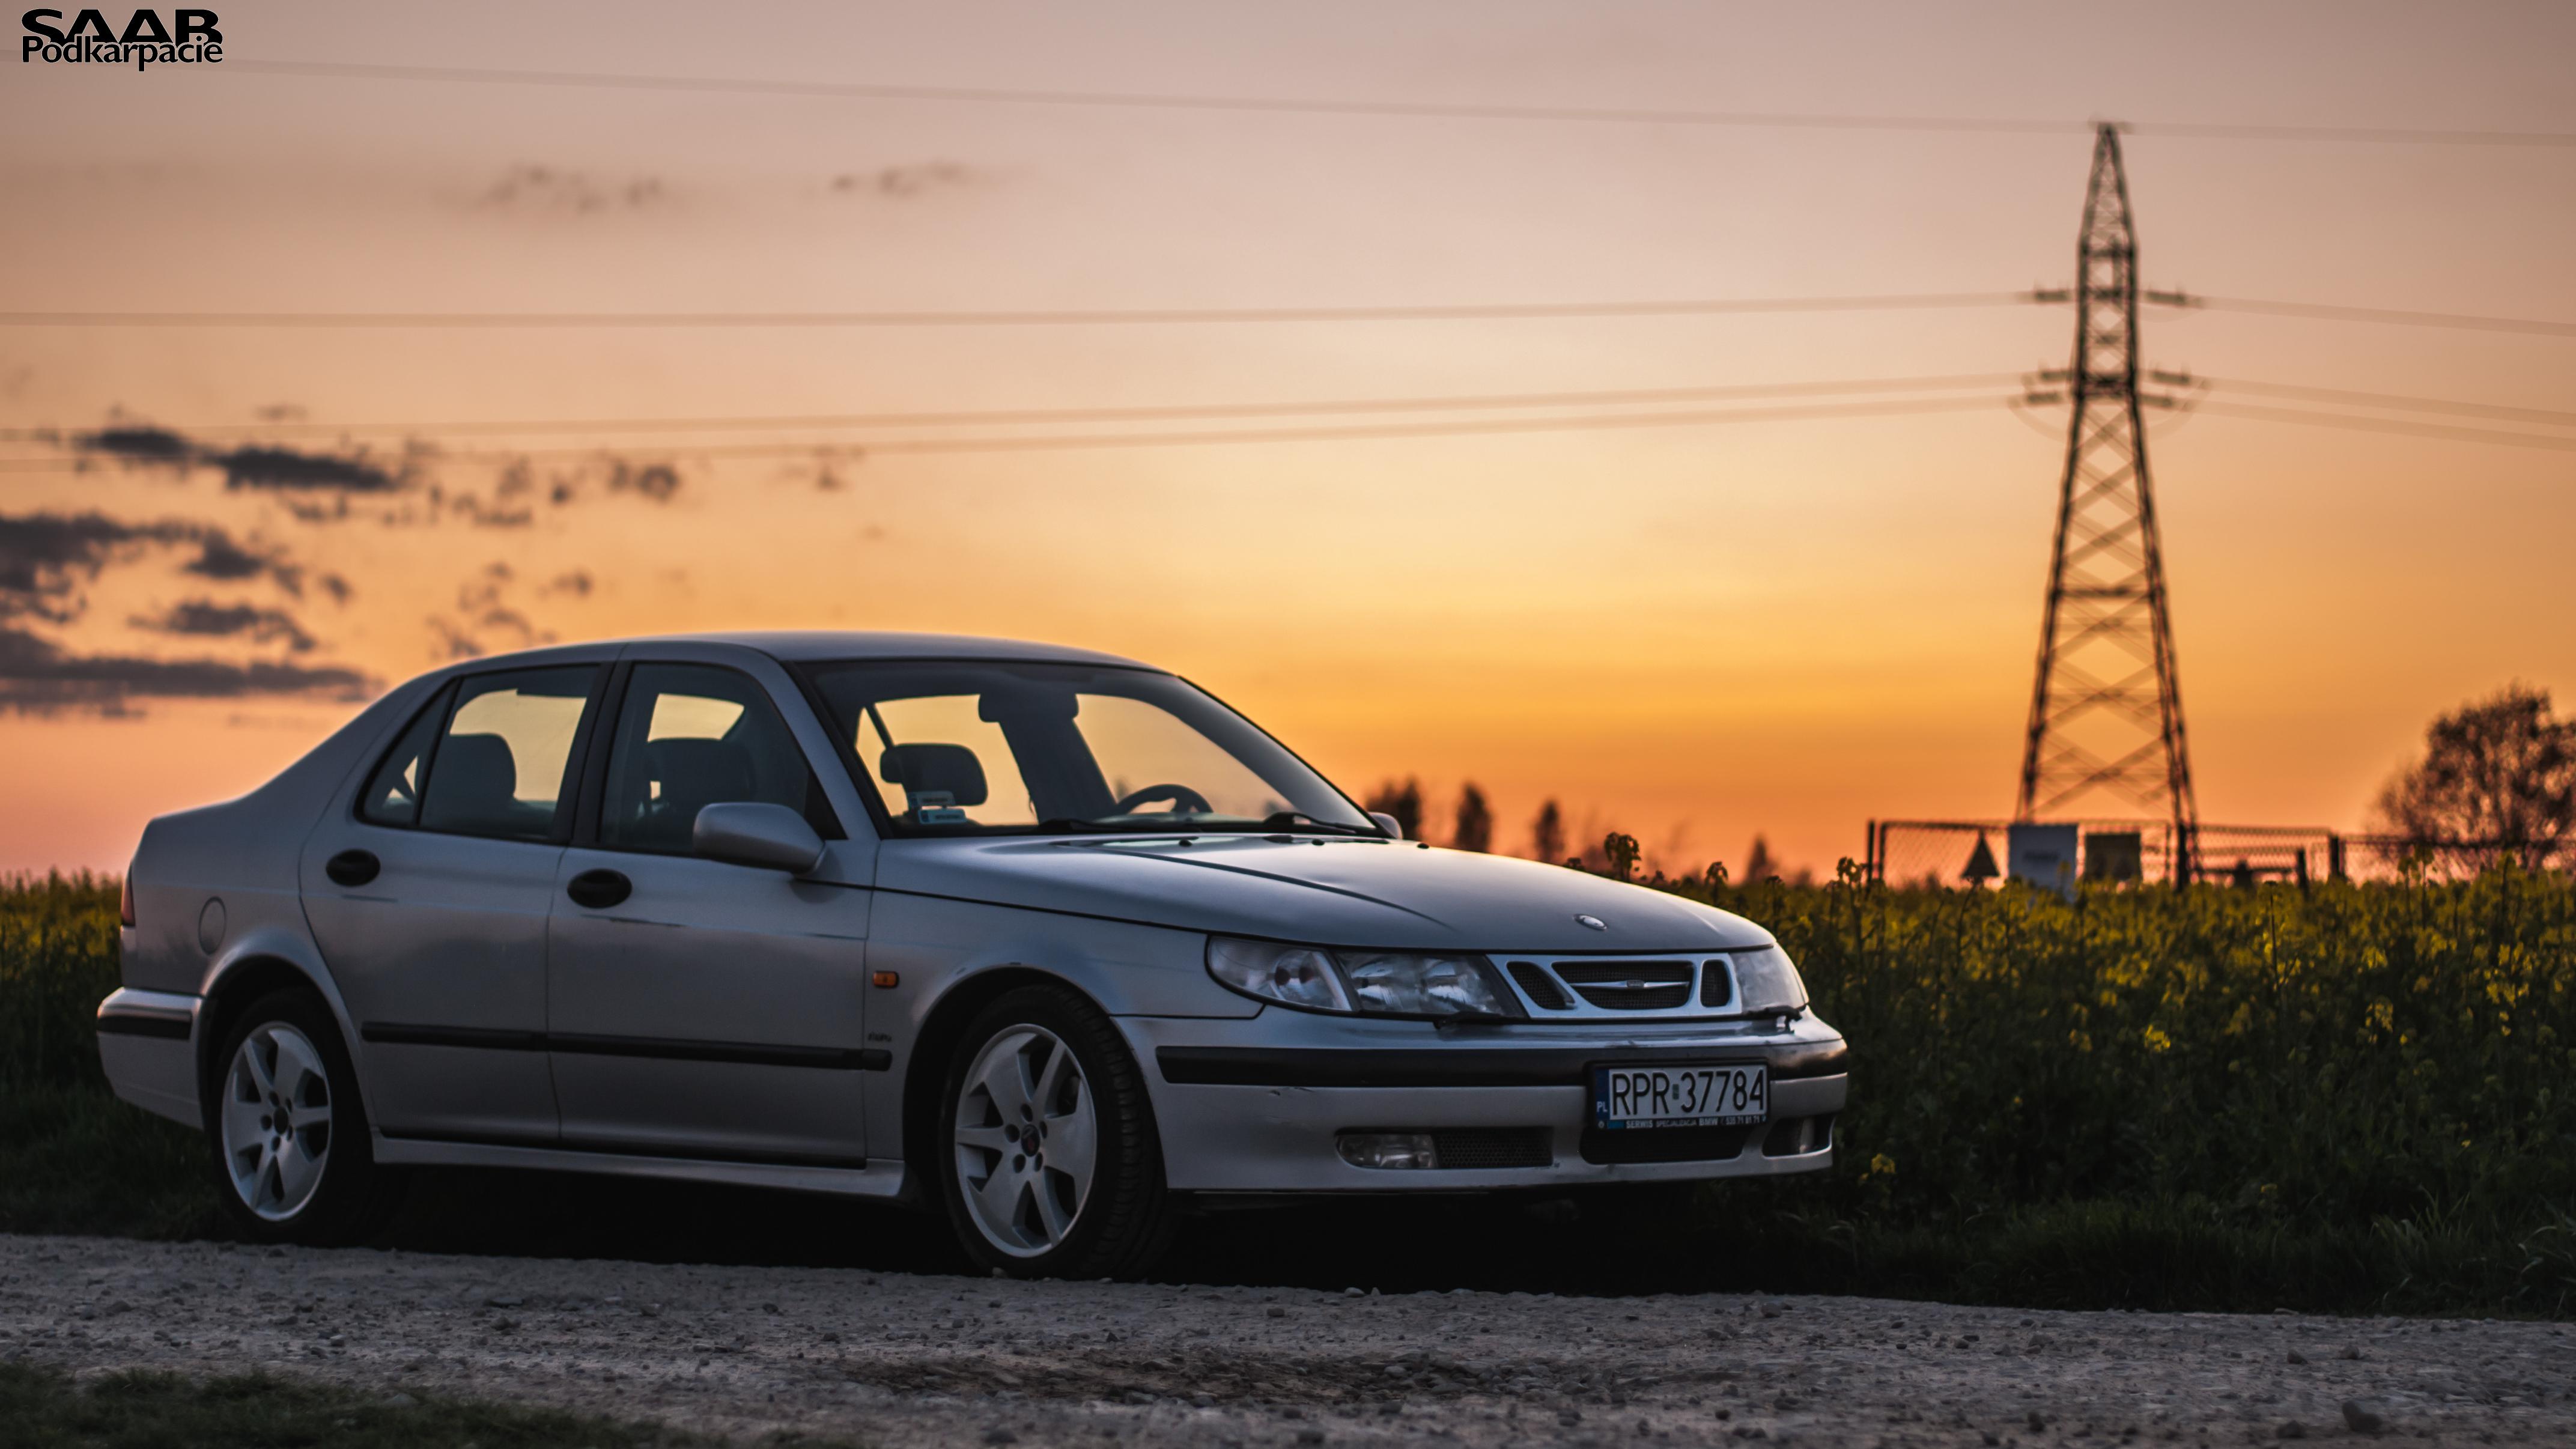 Saab Car.